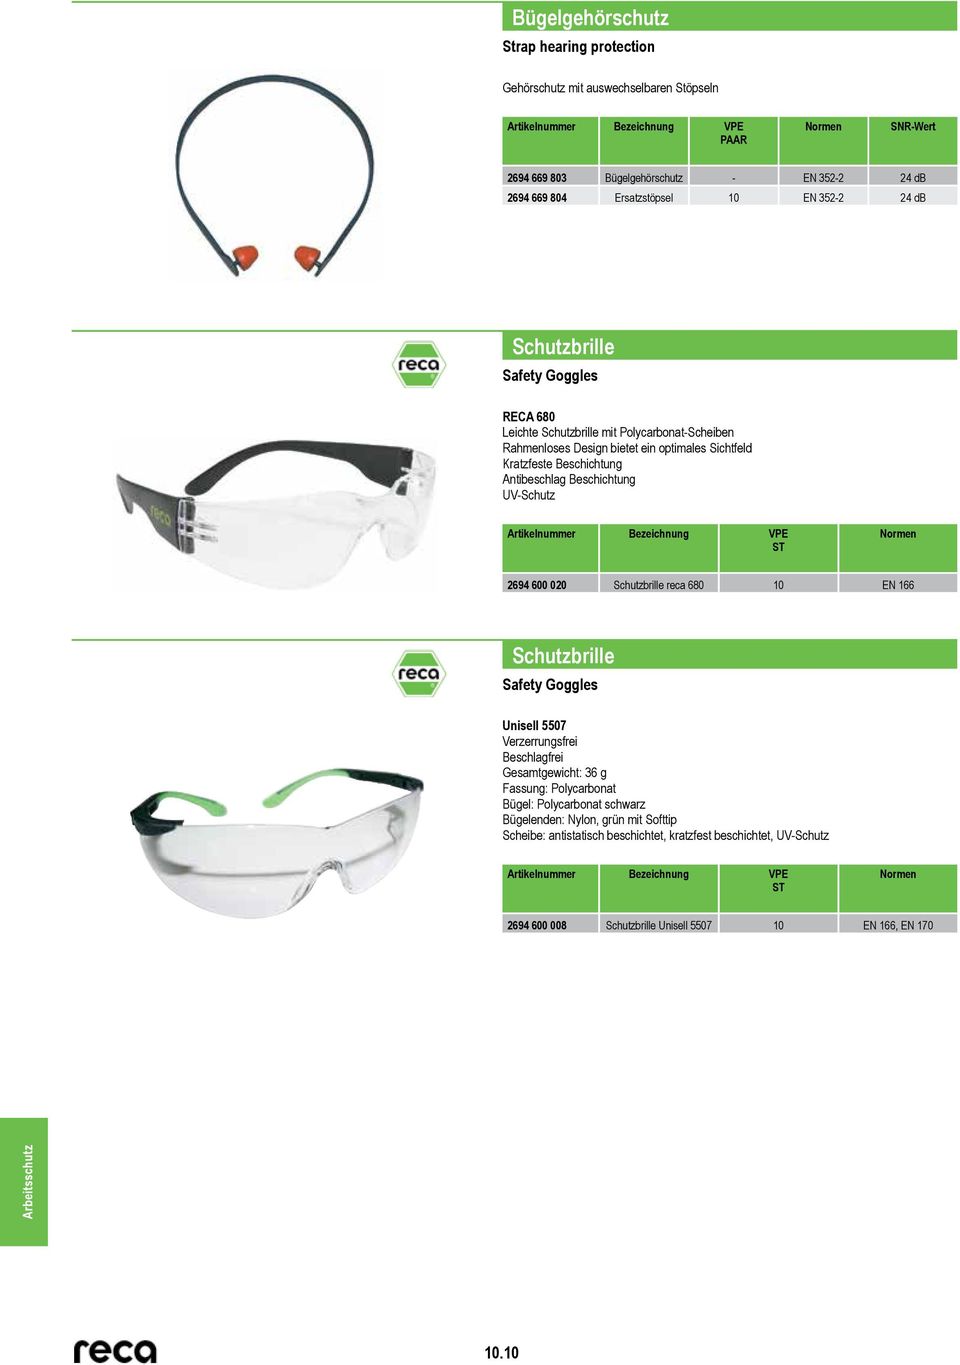 Beschichtung UV-Schutz 2694 600 020 Schutzbrille reca 680 10 EN 166 Schutzbrille Safety Goggles Unisell 5507 Verzerrungsfrei Beschlagfrei Gesamtgewicht: 36 g Fassung: Polycarbonat